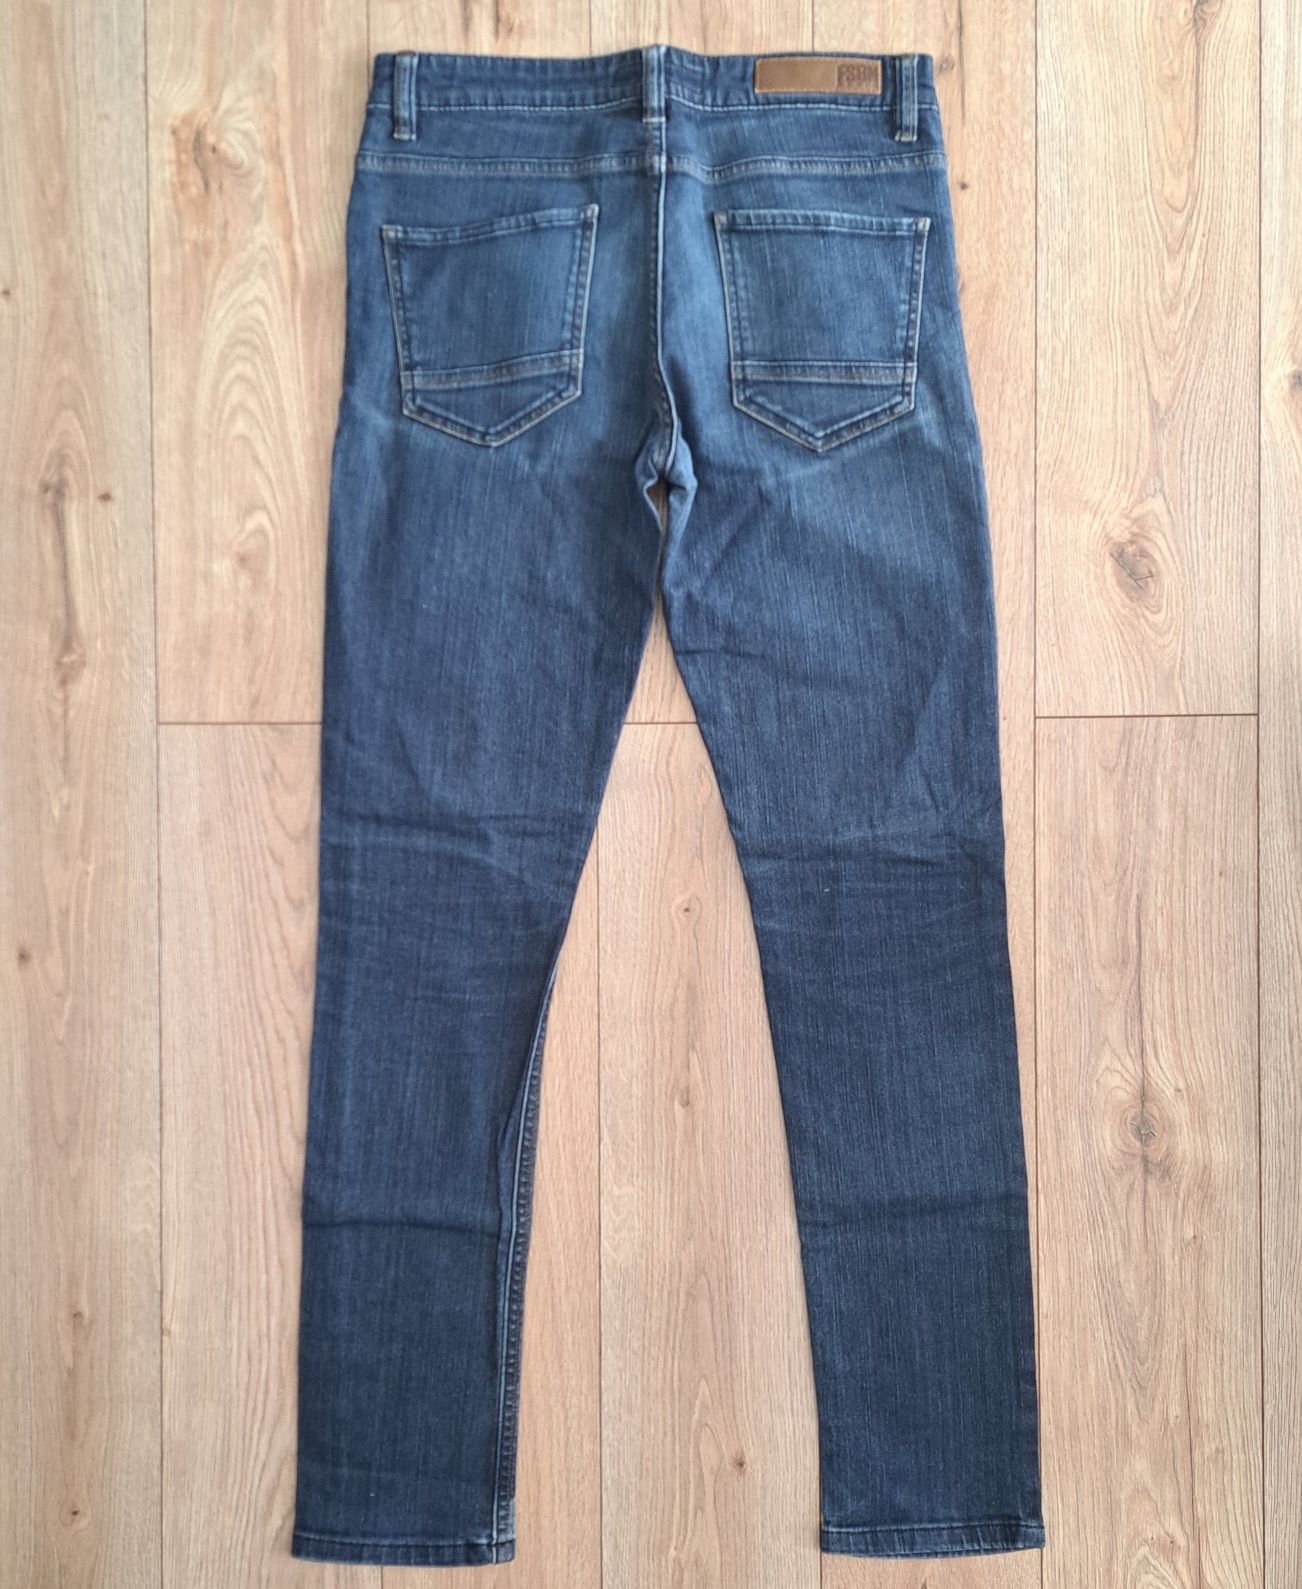 Męskie jeansowe spodnie NEW YORKER slim fit rozmiar 32/34